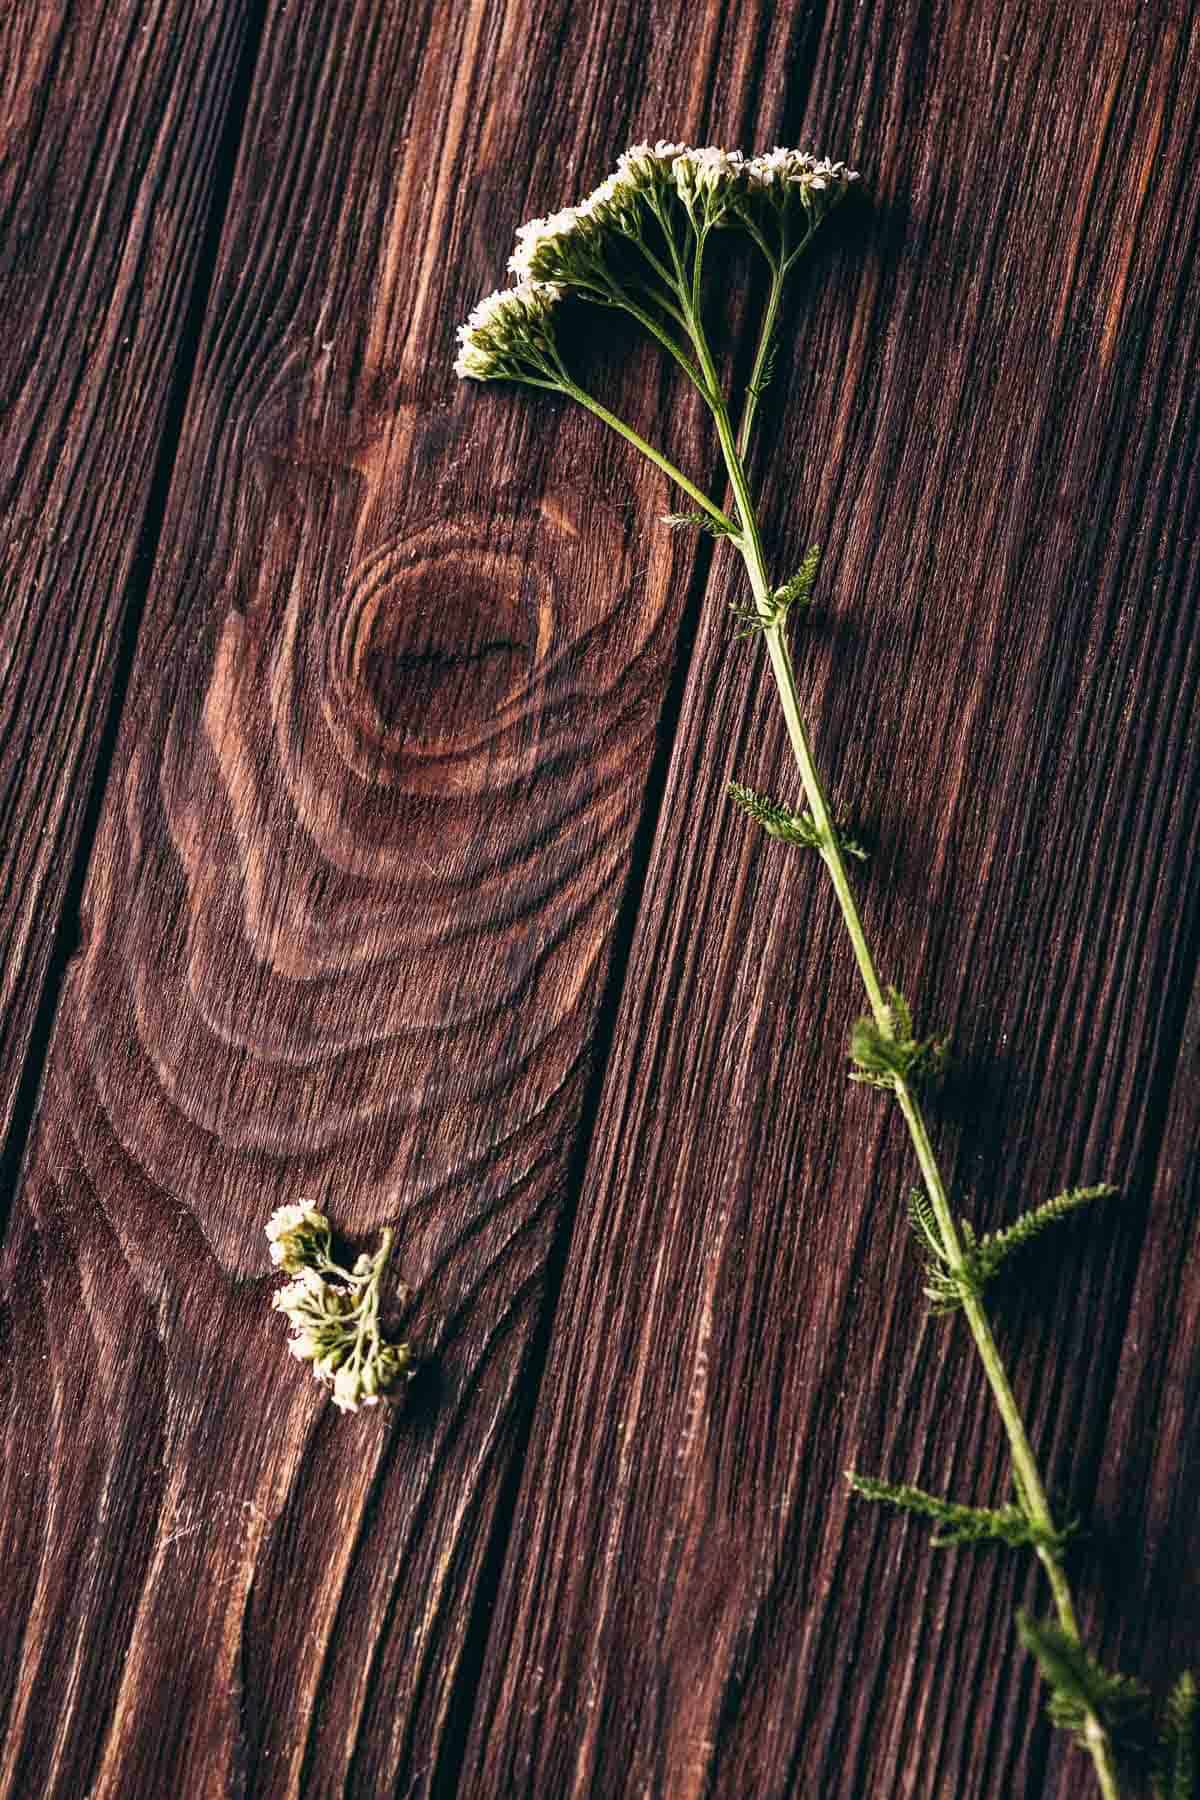 A fresh yarrow plant resting on a dark wooden table.